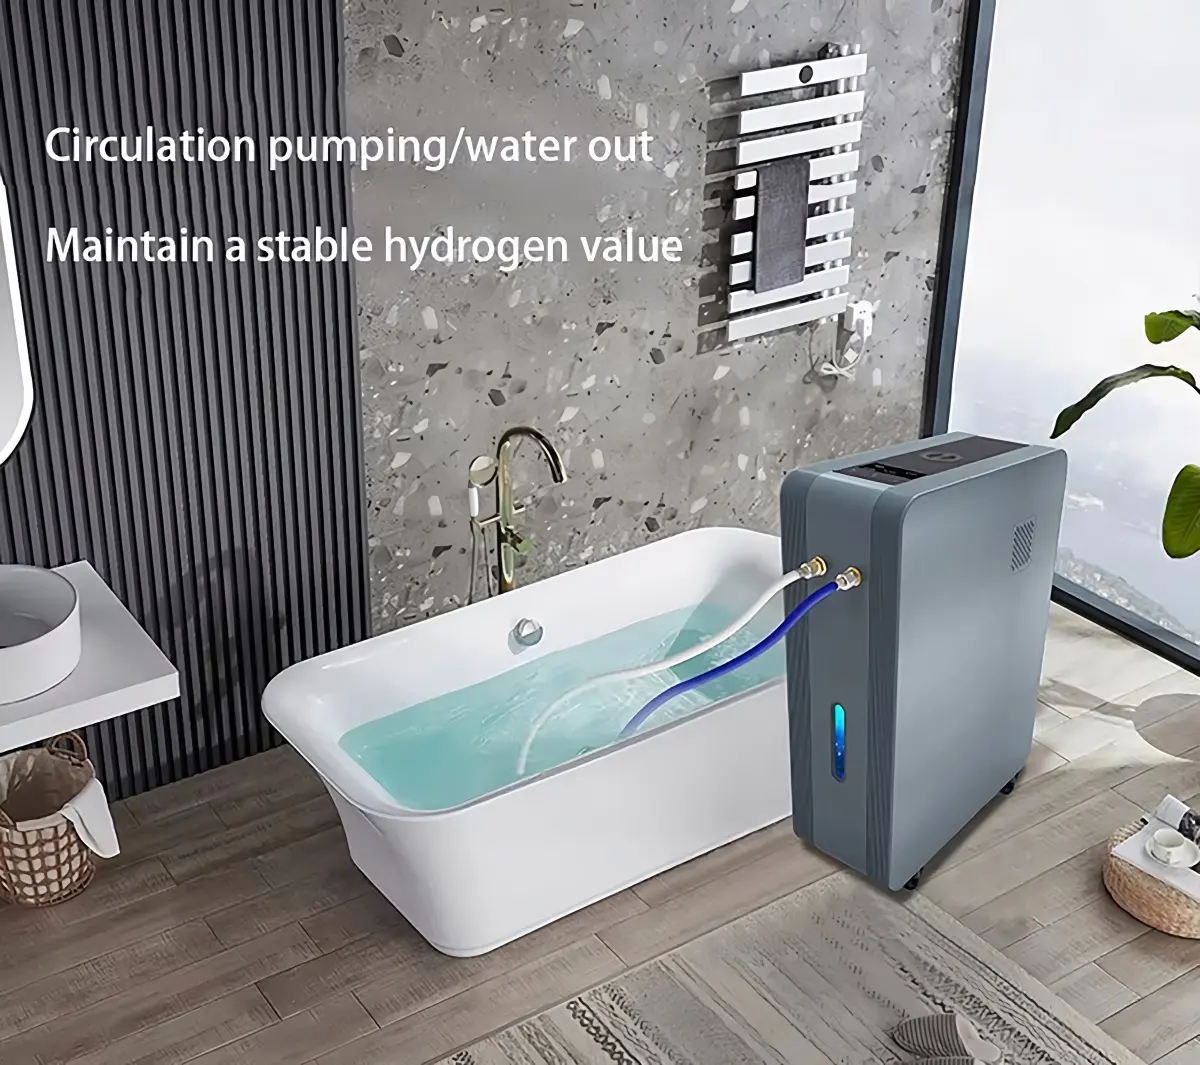 مولد مياه للعلاج بالحمام 4700 مللي/دقيقة إخراج ماء يصل إلى 2600 رطل لكل بوصة ماء غني بالهيدروجين جهاز حمام H2 بحوض فقاعات